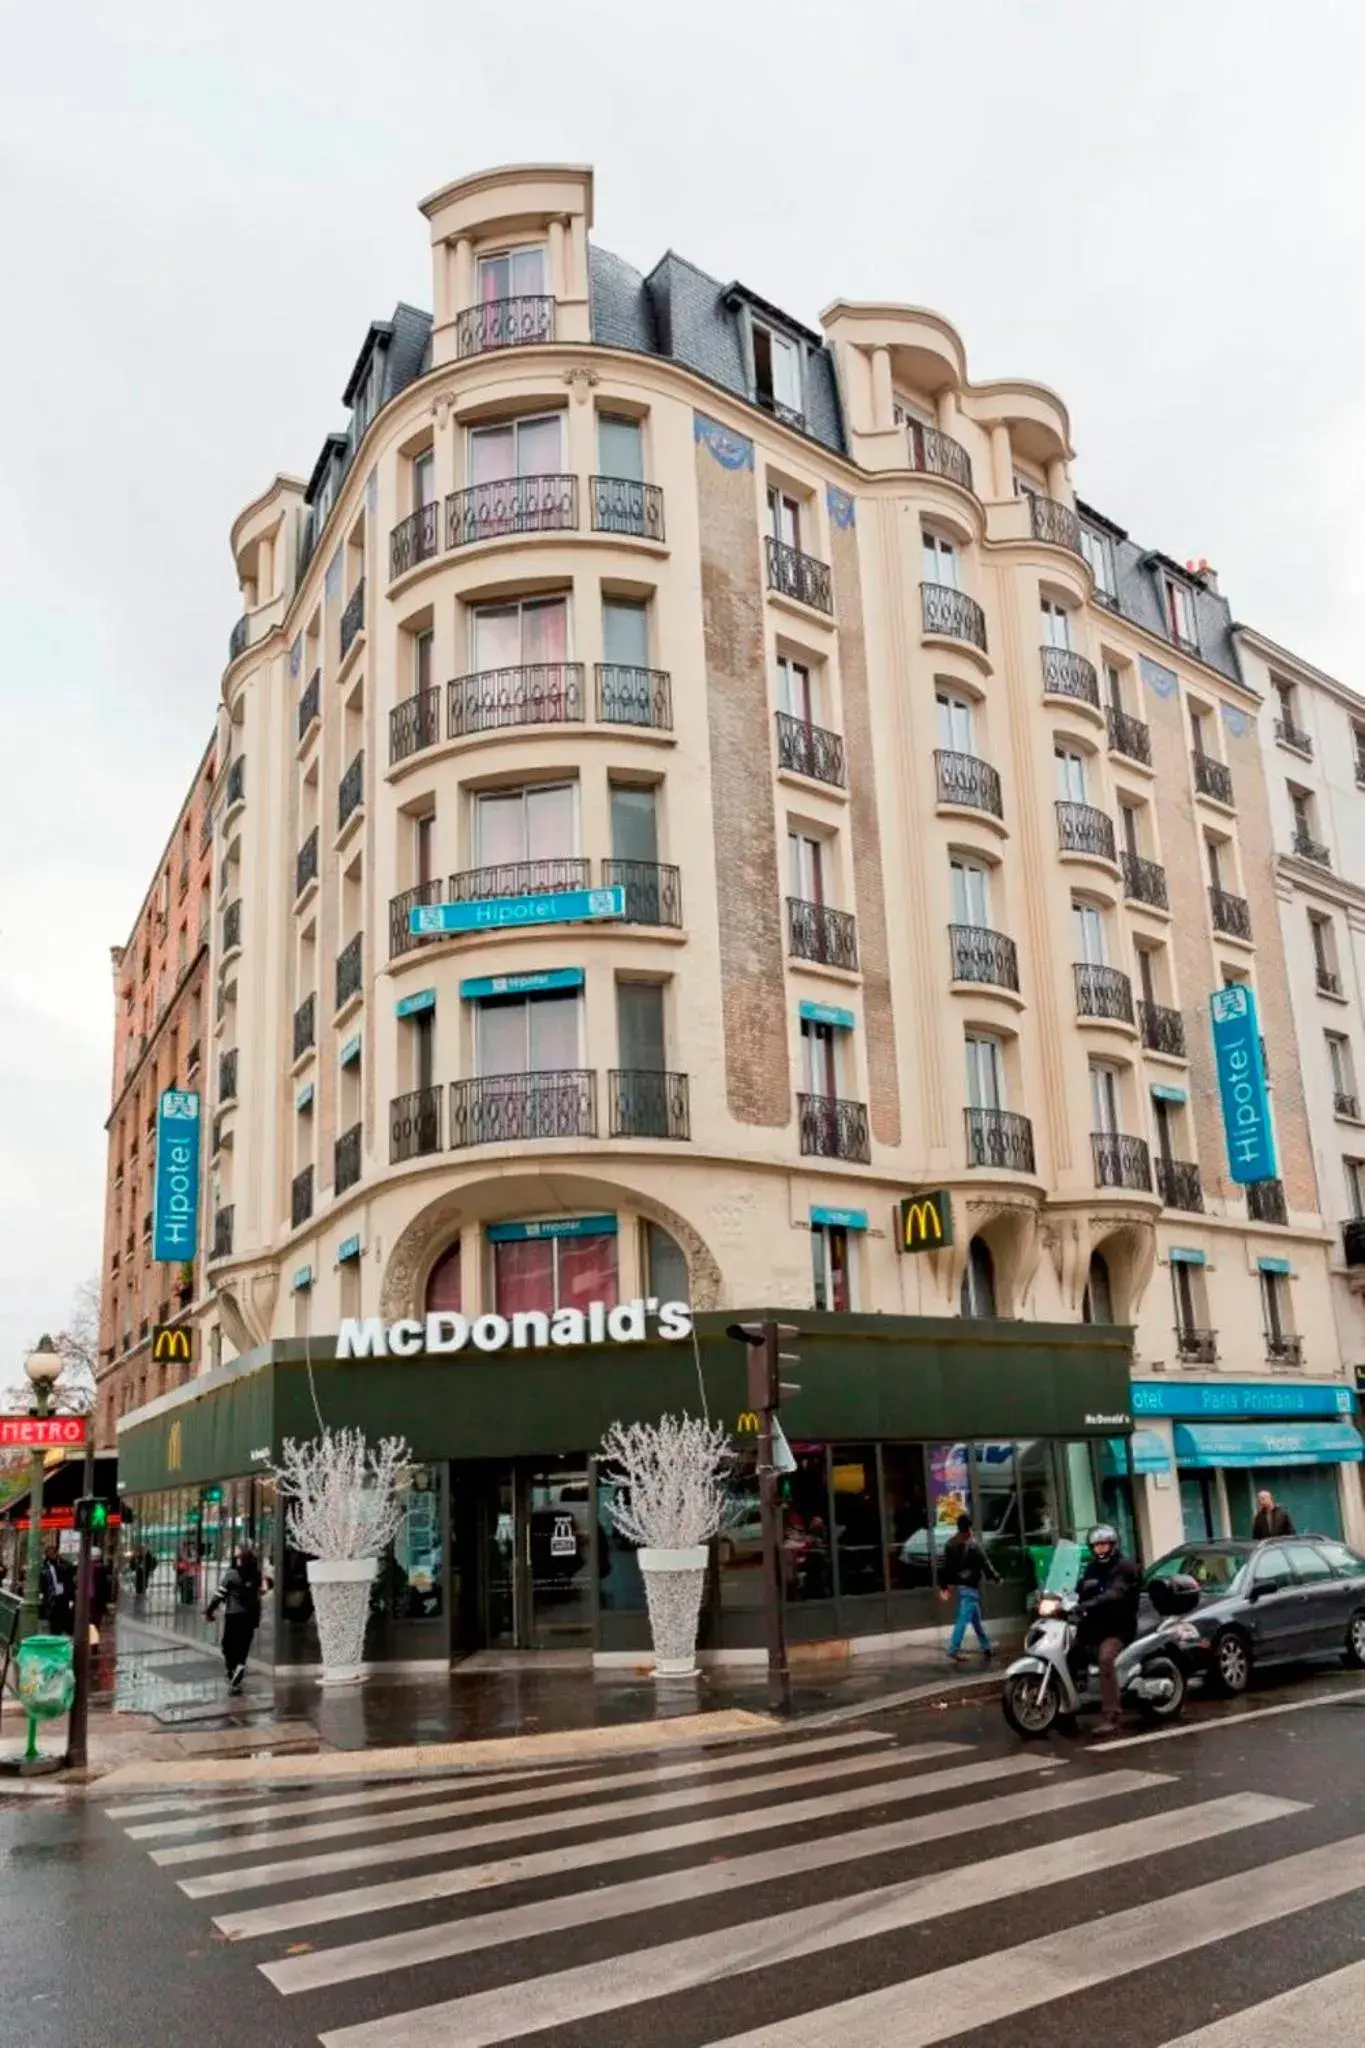 Facade/entrance, Property Building in Hipotel Paris Printania